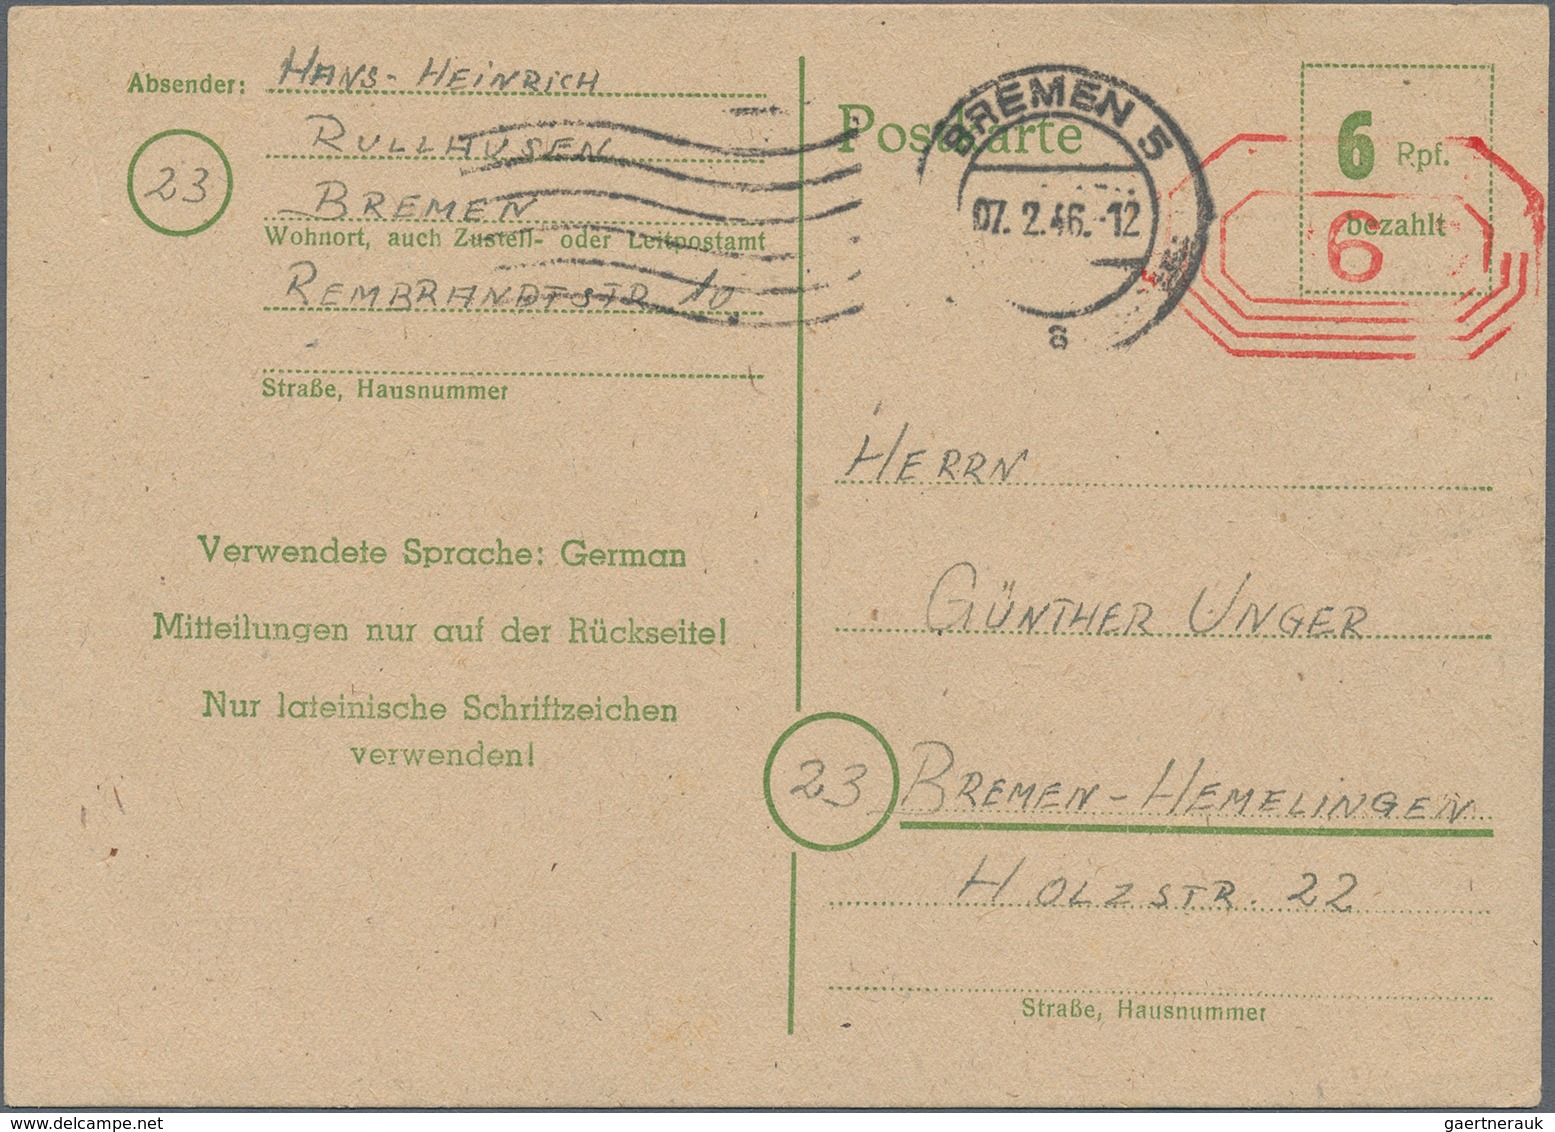 Deutschland: 1800/1955, POSTGESCHICHTE BREMEN mit viel historischer Kenntnis aufgebaute Sammlung bei